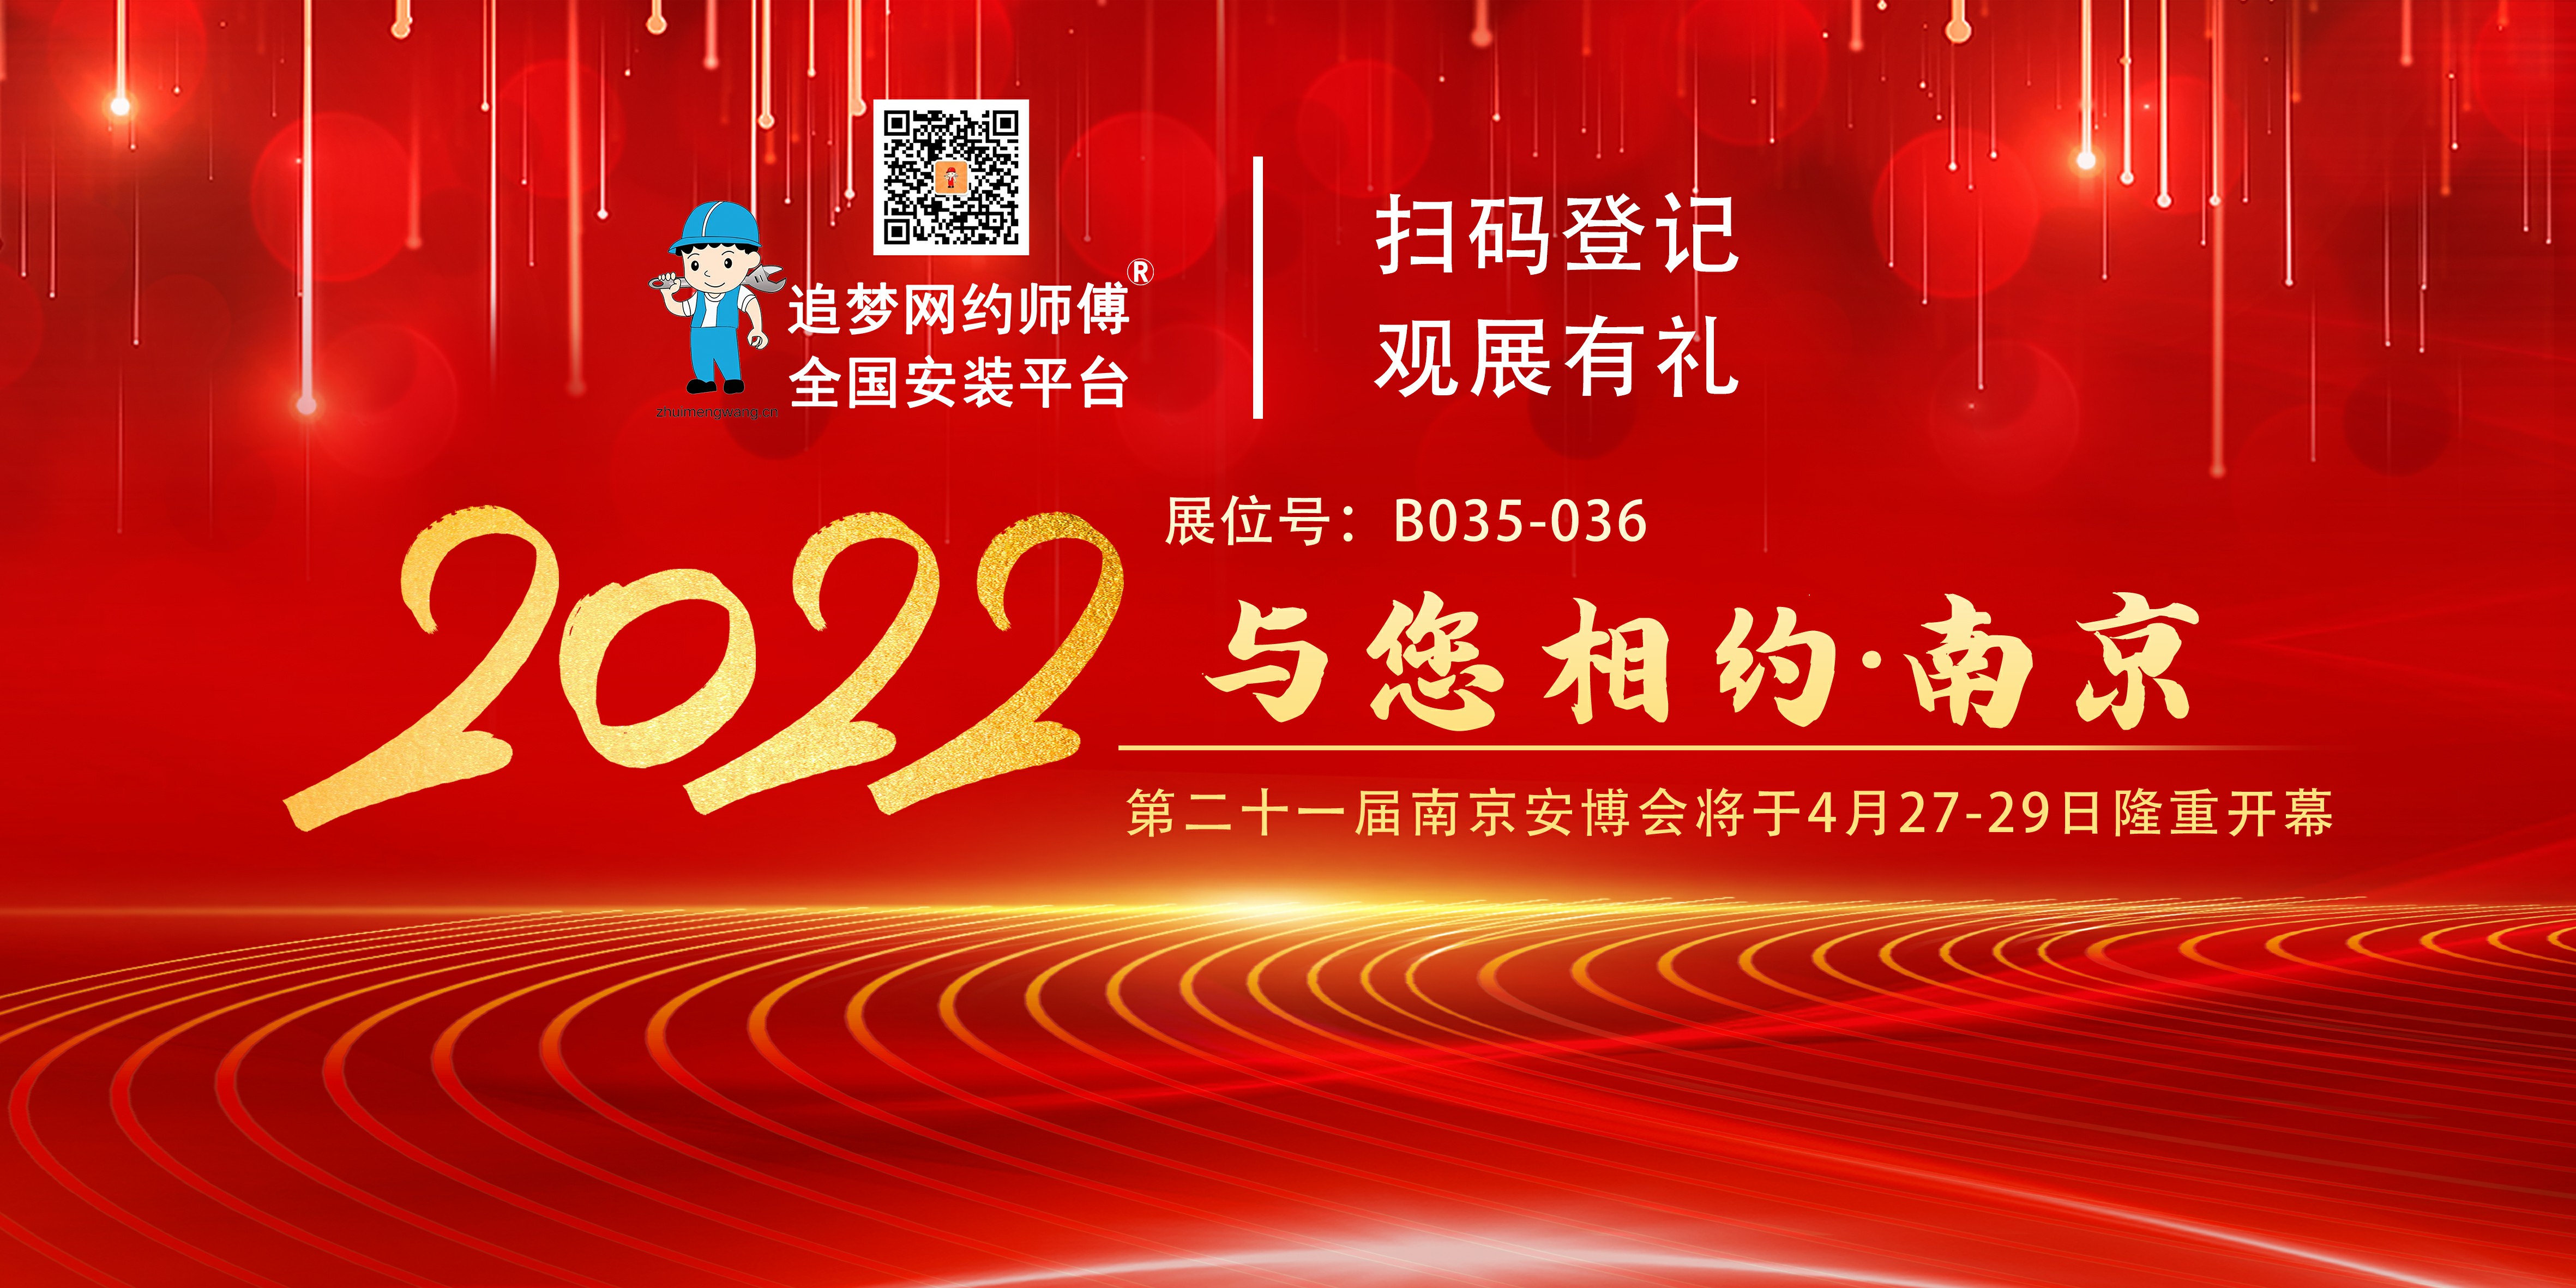 2022 第二十一届南京安博会将在南京隆重开幕